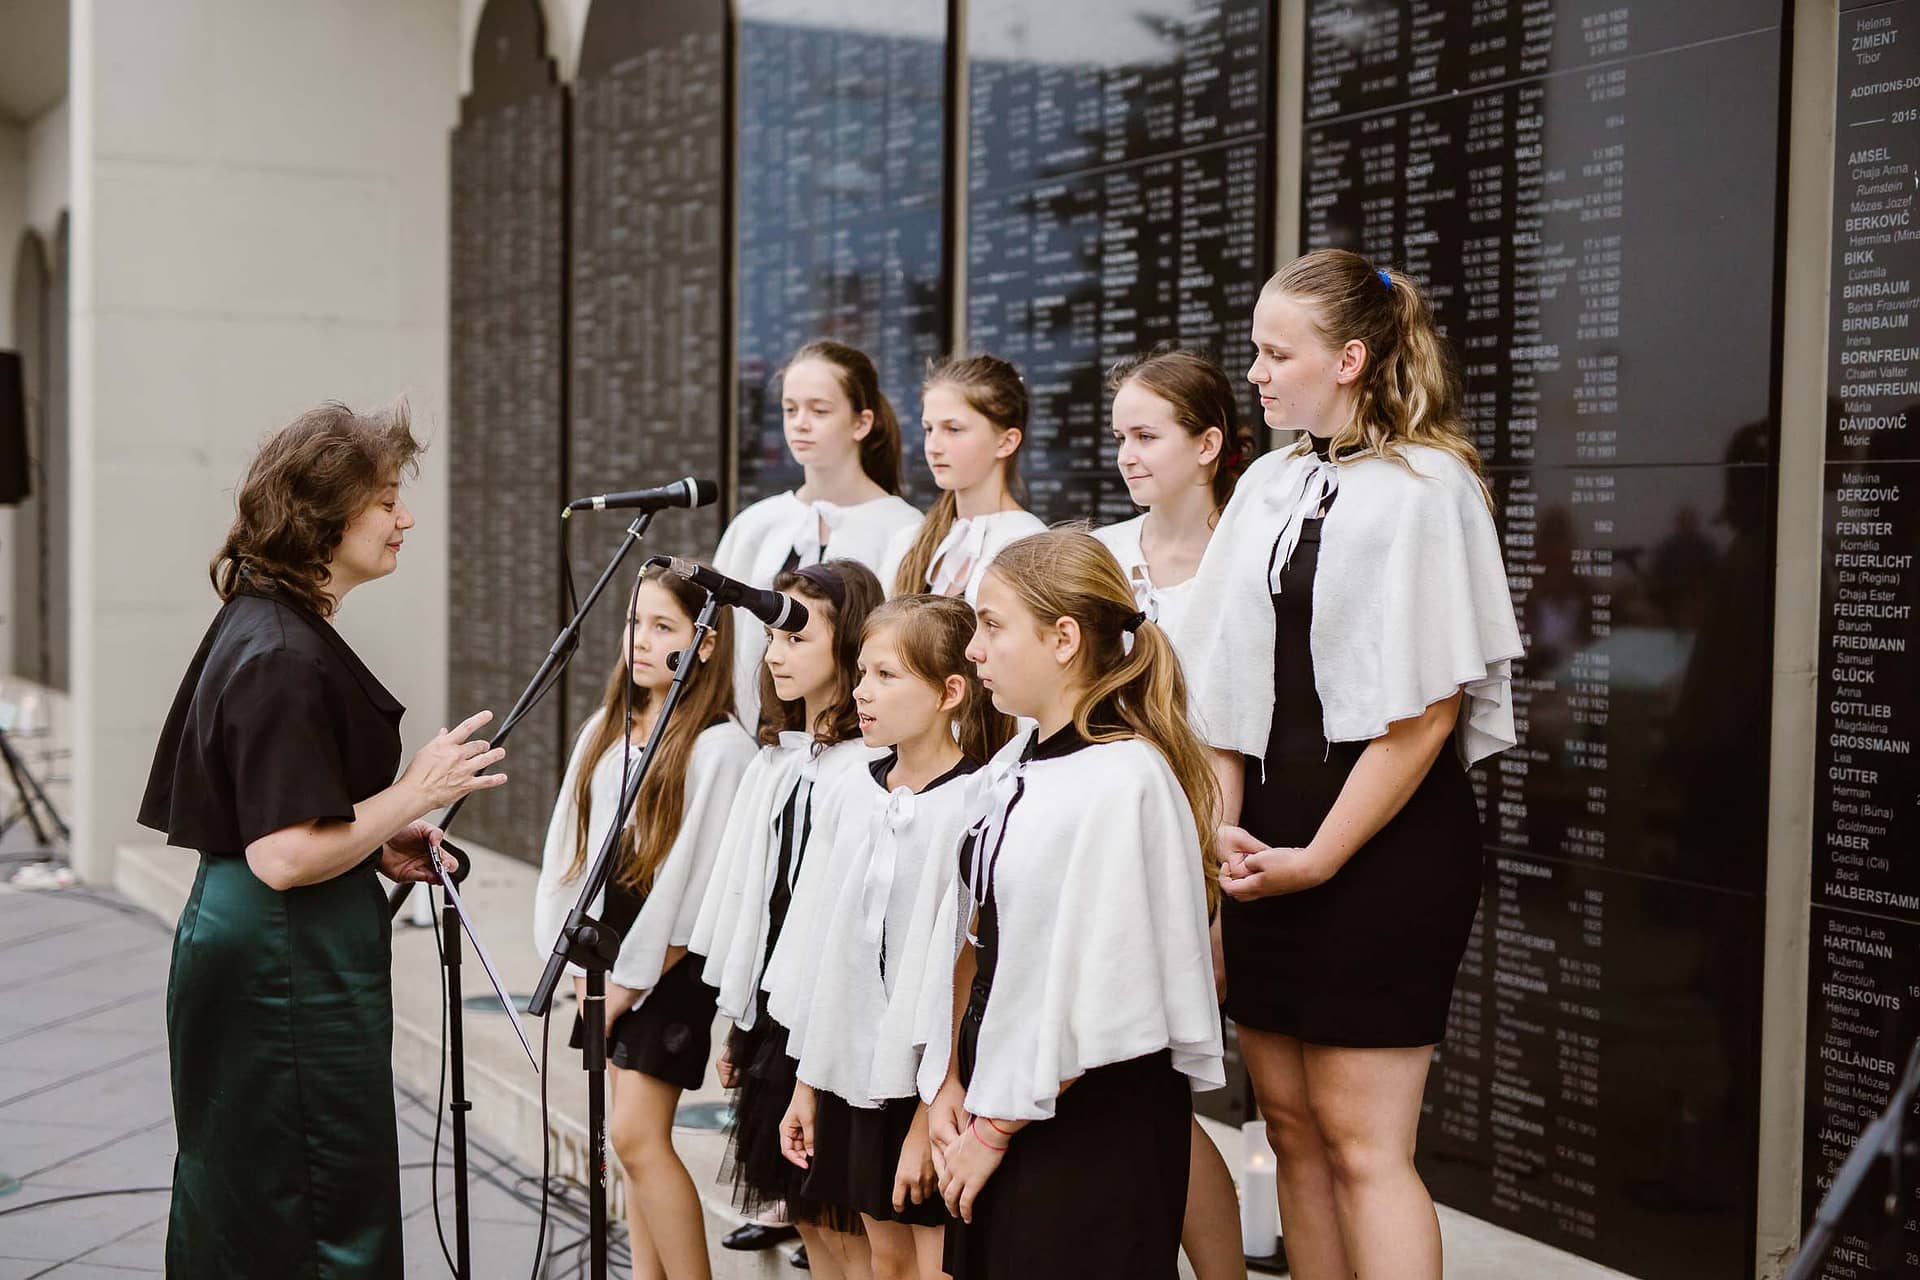 Local children’s choir sang the Hebrew song Yaldut Nishkachat (a Forgotten Childhood)